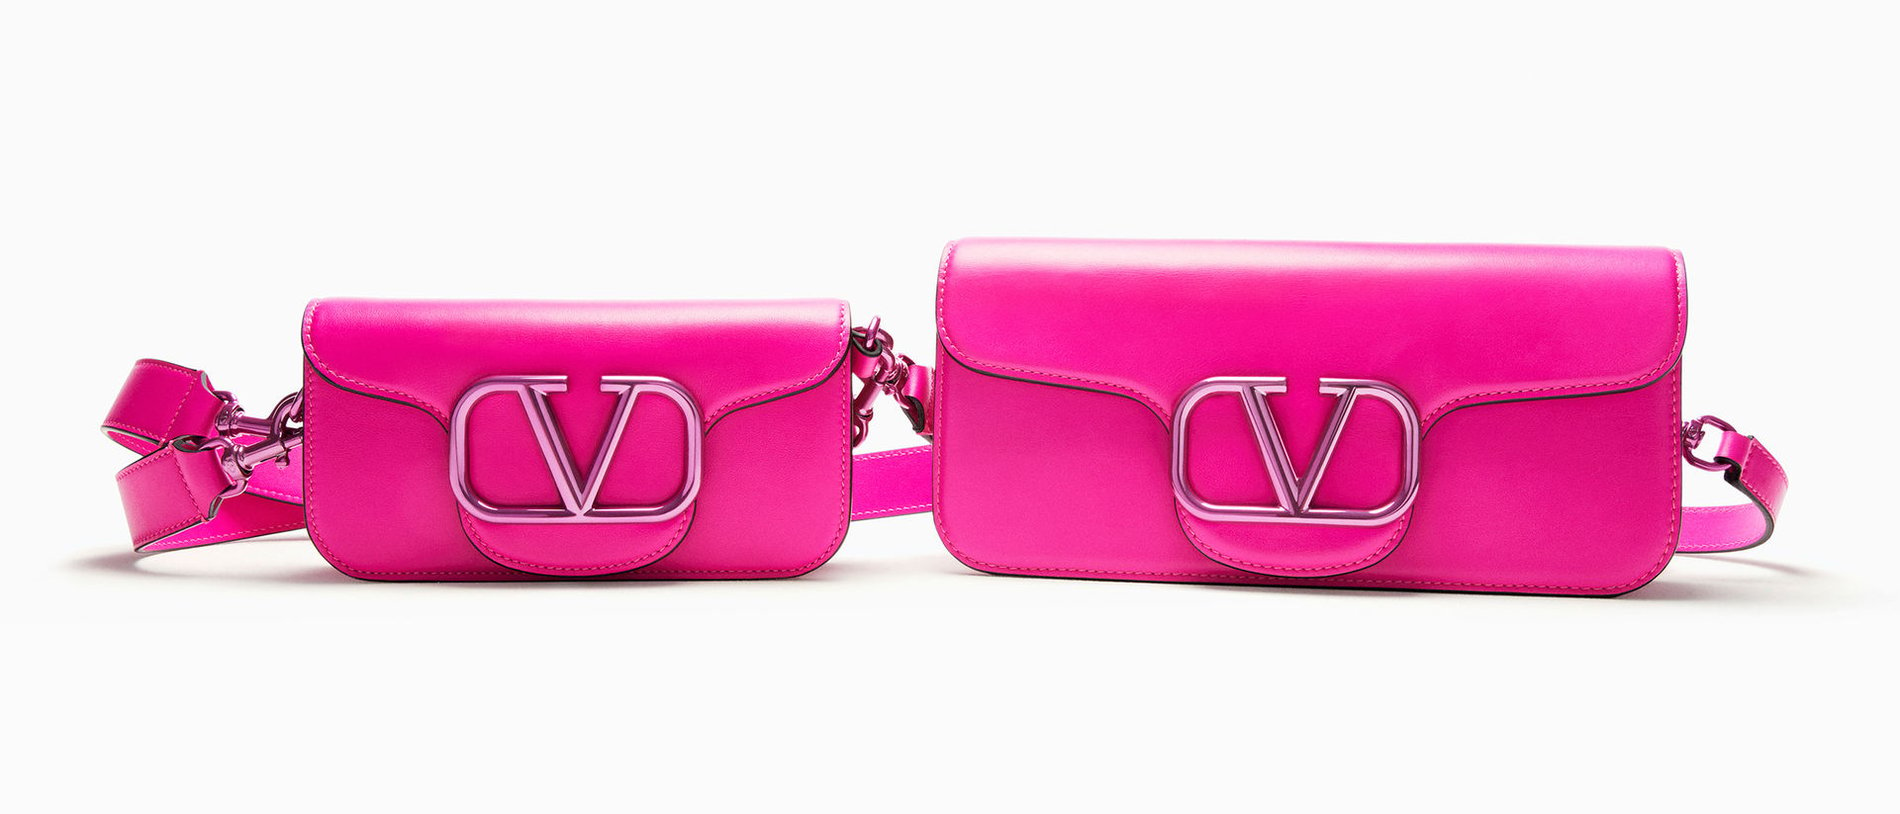 Valentino Banus El Corte Inglés Men's Accessories: ropa, bolsos, zapatos y complementos para en Marbella